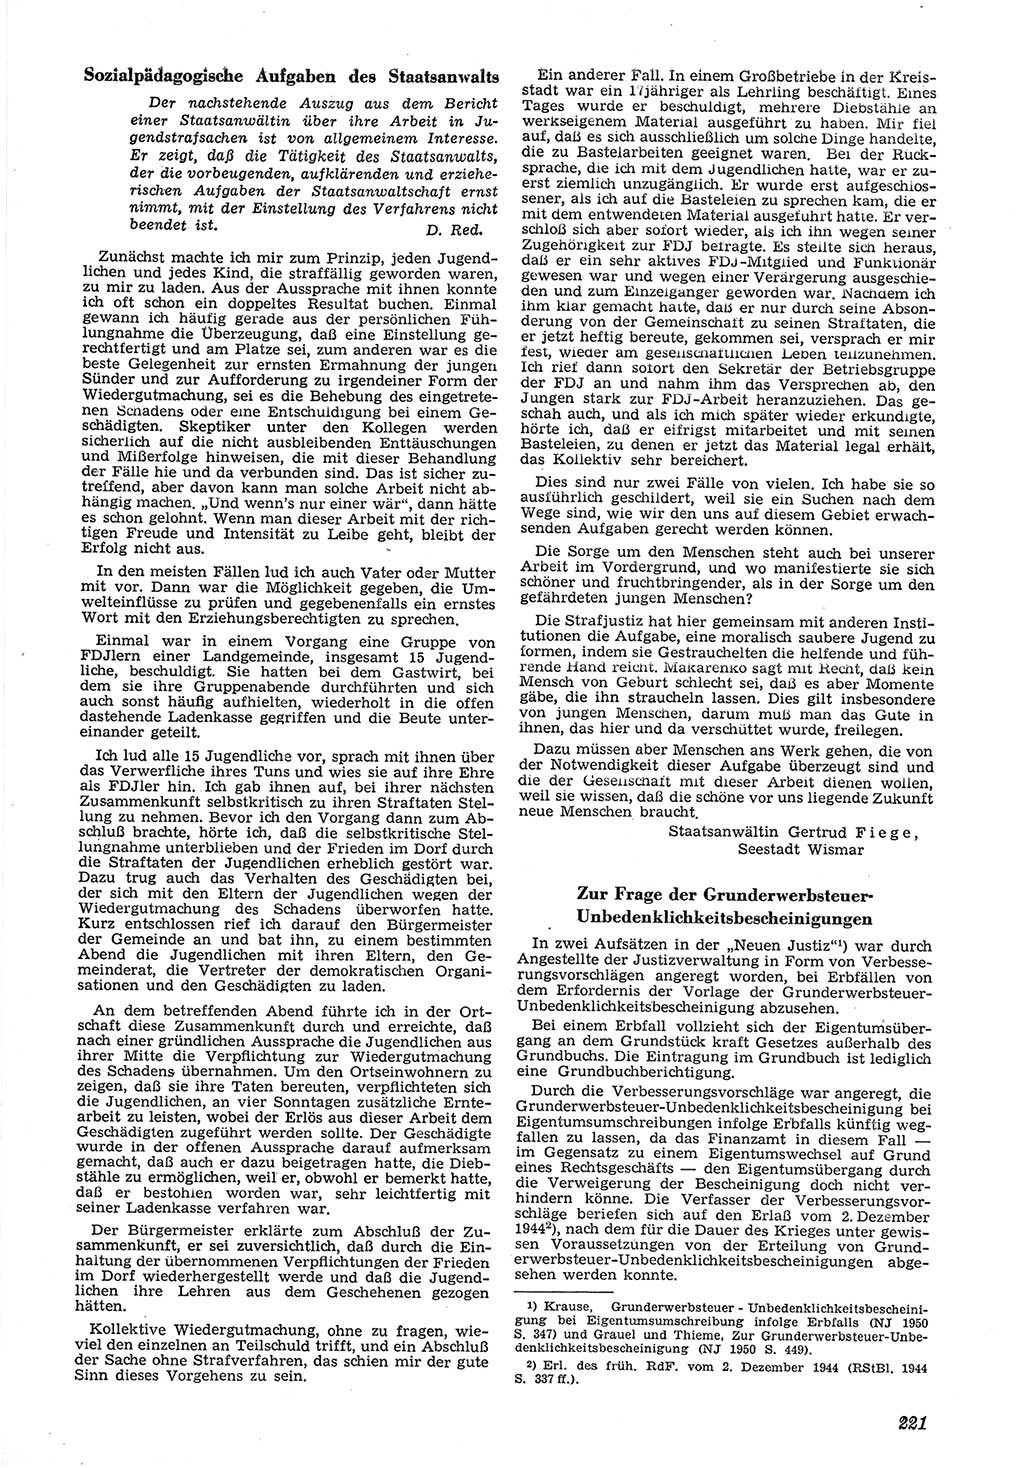 Neue Justiz (NJ), Zeitschrift für Recht und Rechtswissenschaft [Deutsche Demokratische Republik (DDR)], 6. Jahrgang 1952, Seite 221 (NJ DDR 1952, S. 221)